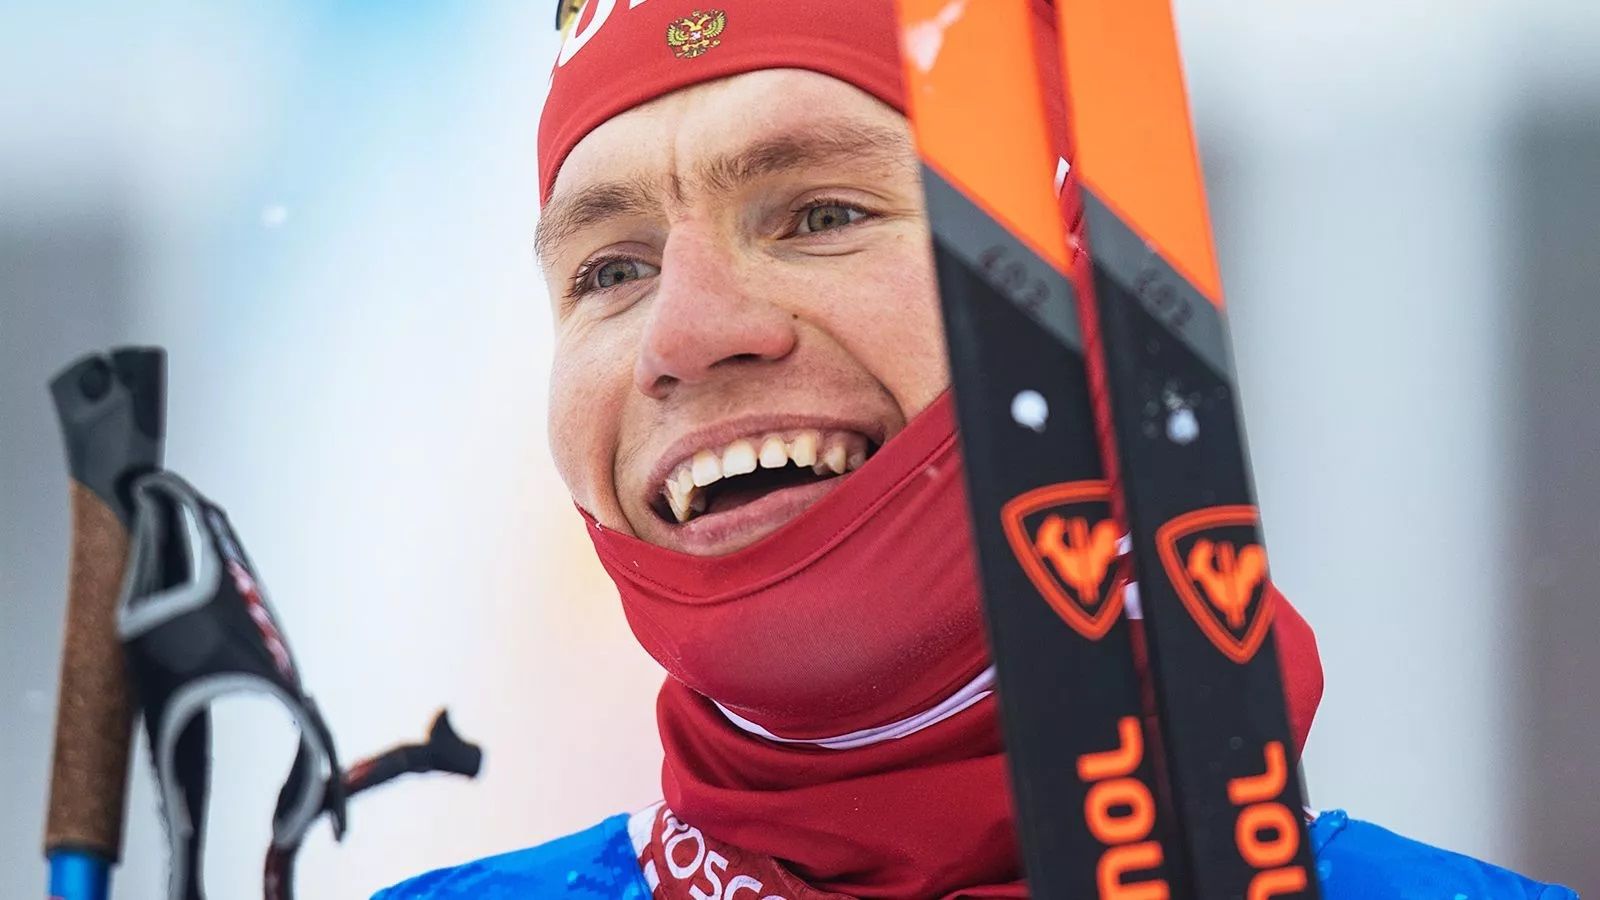 Рейтинг призовых лыжников: Большунов и Непряева вышли за 4 млн, но сильно отстали от иностранцев